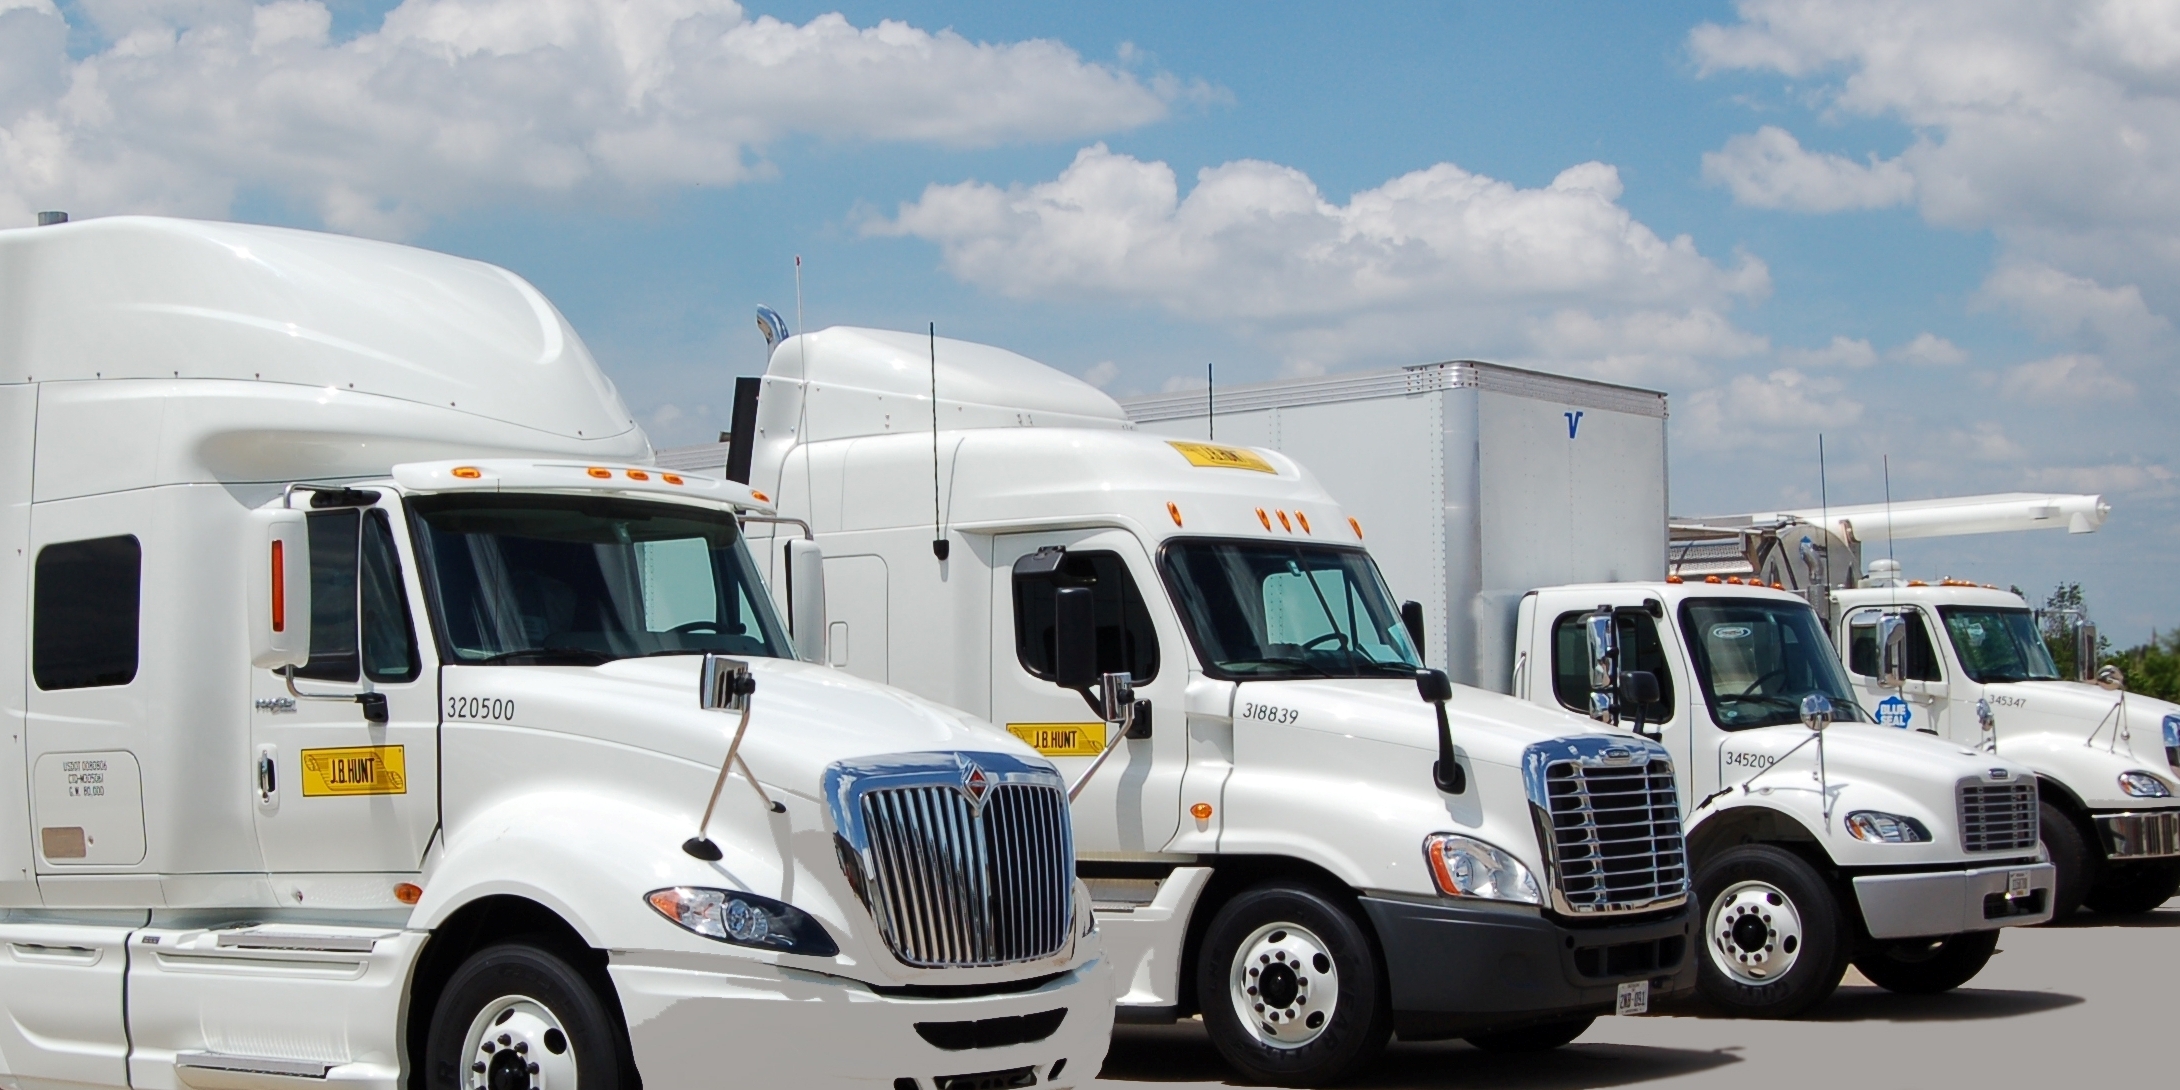 J.B. Hunt Transport, Inc Truck Fleet